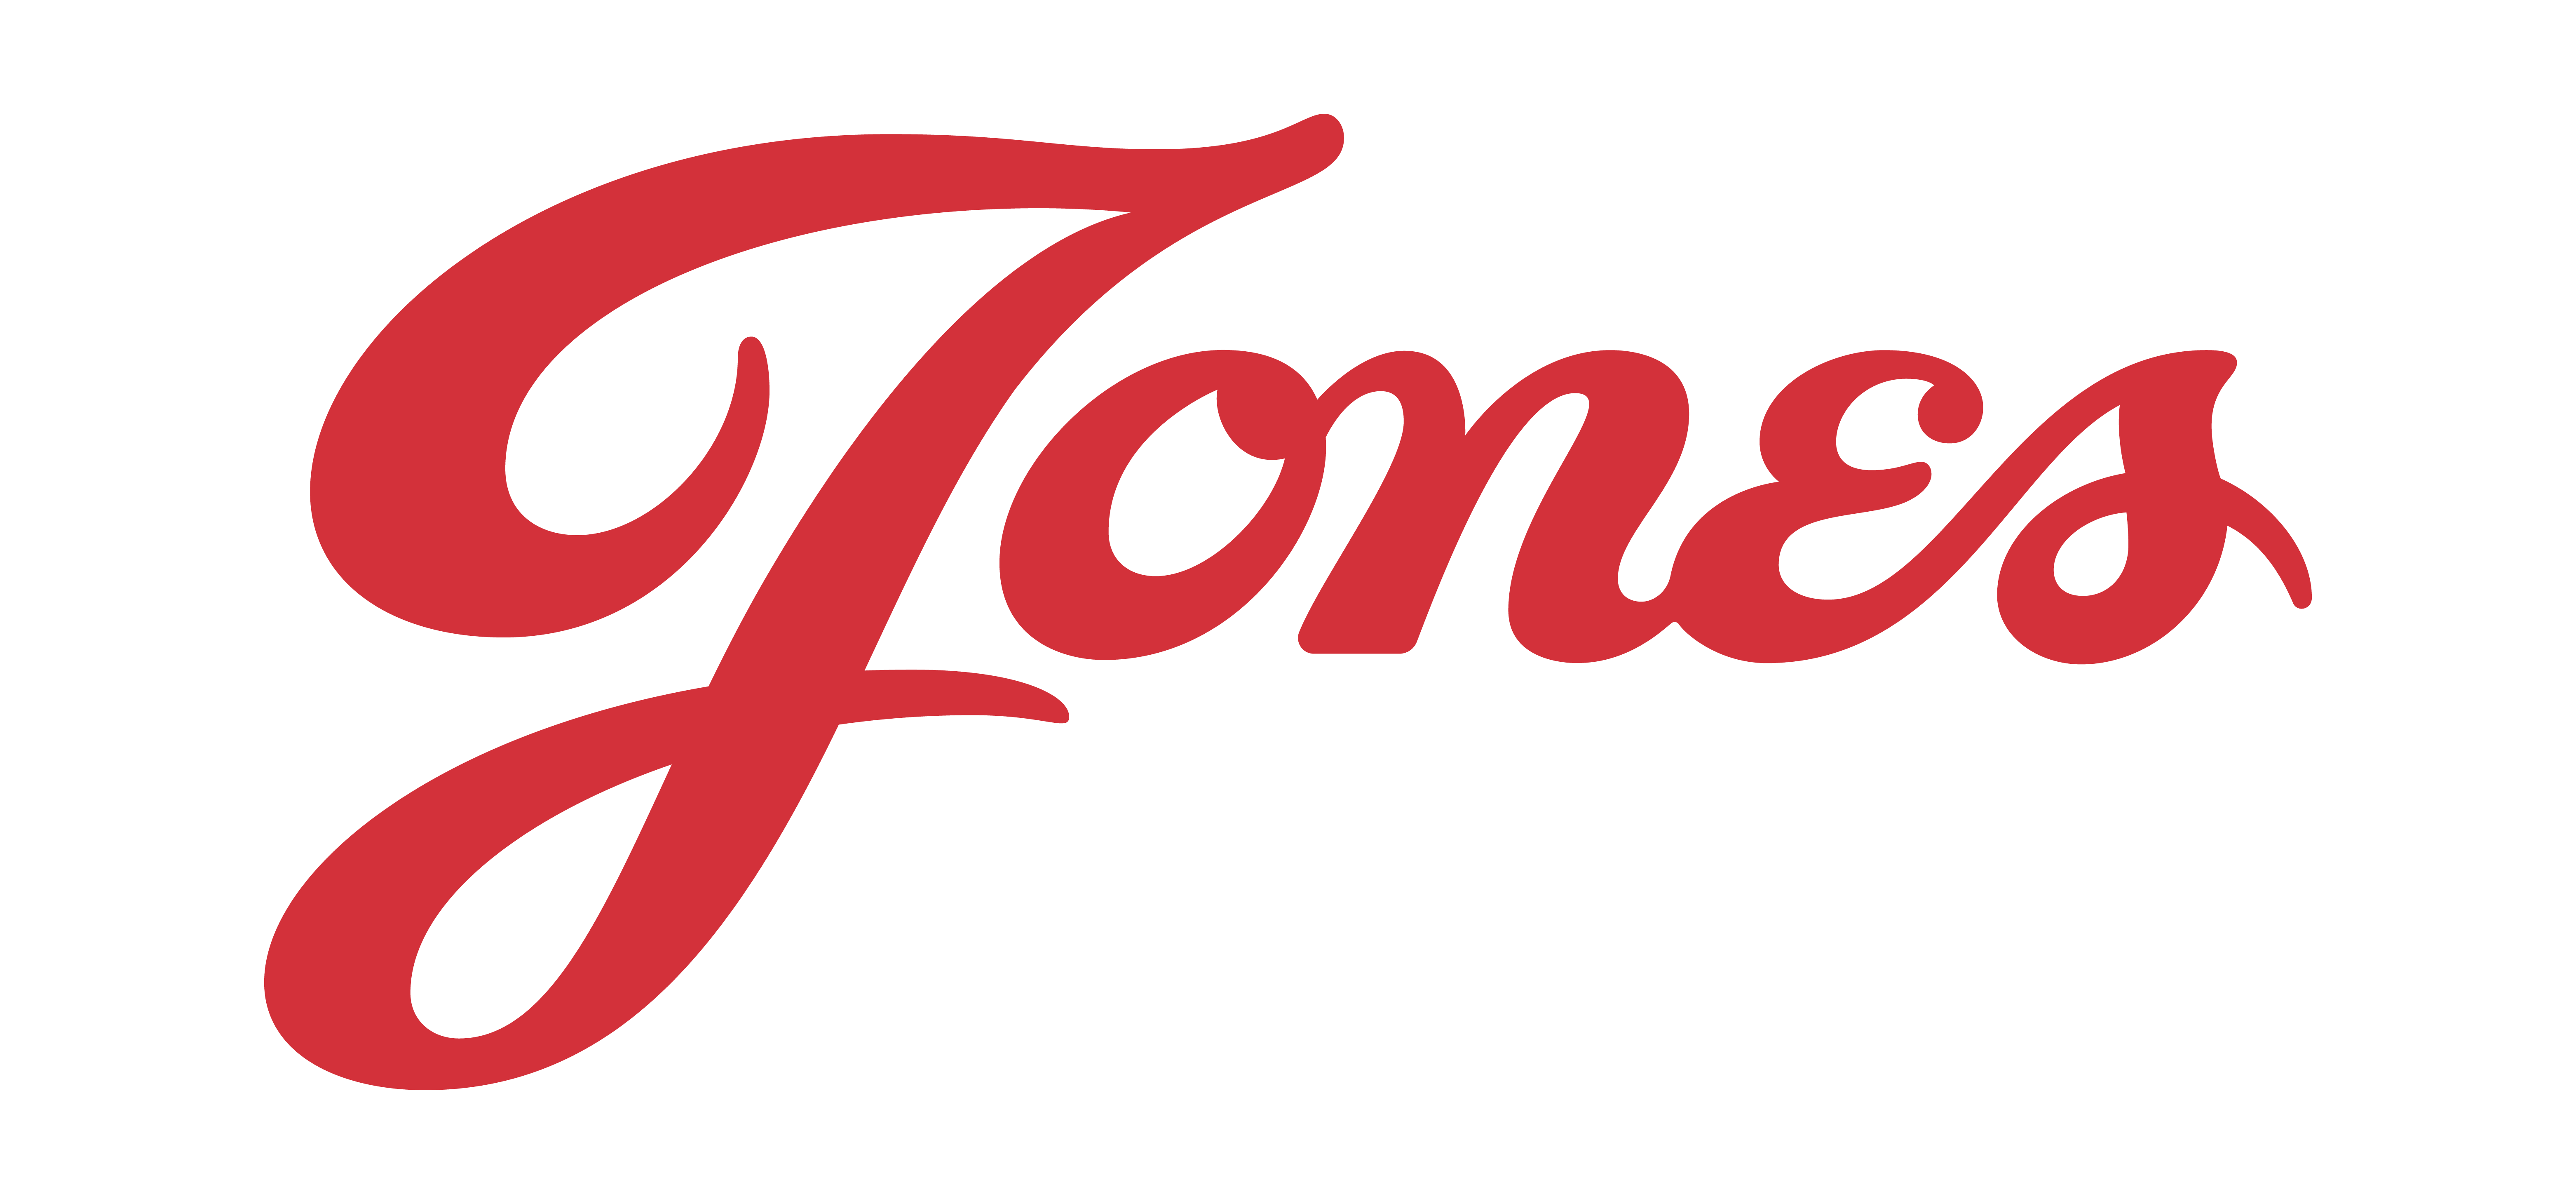 Jones Corporate-1